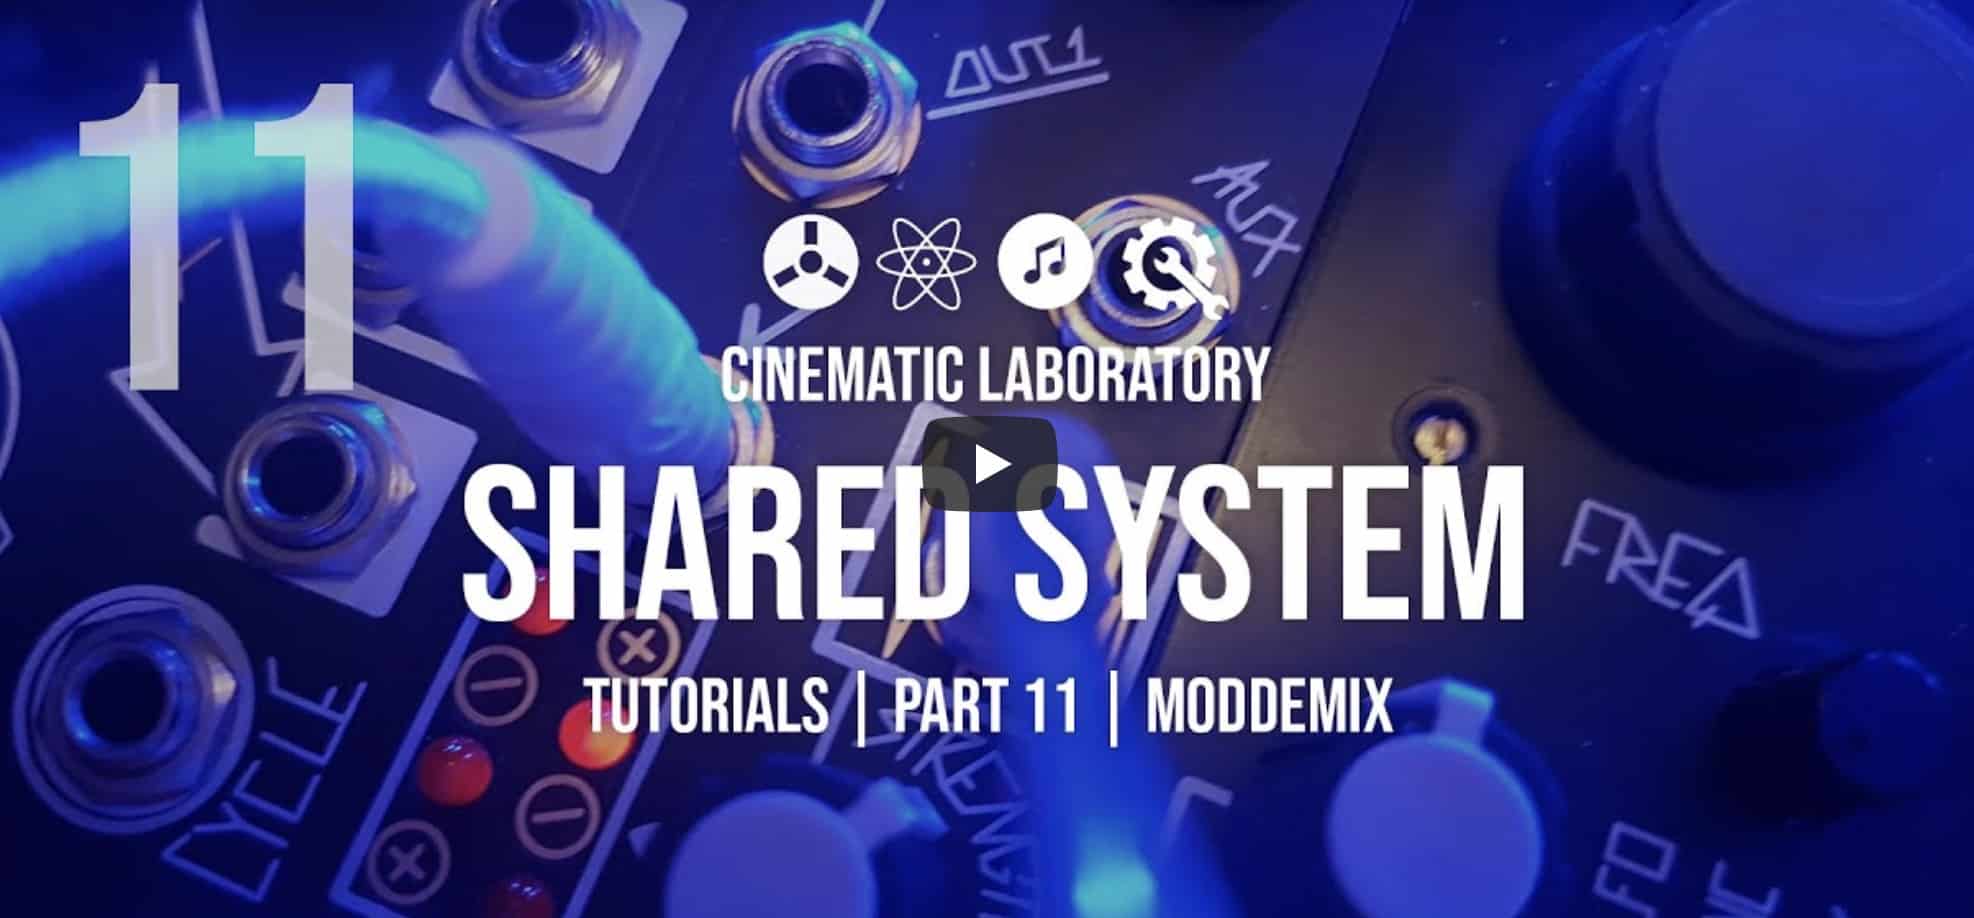 Shared System Tutorials | Part 11 - #ModDemix